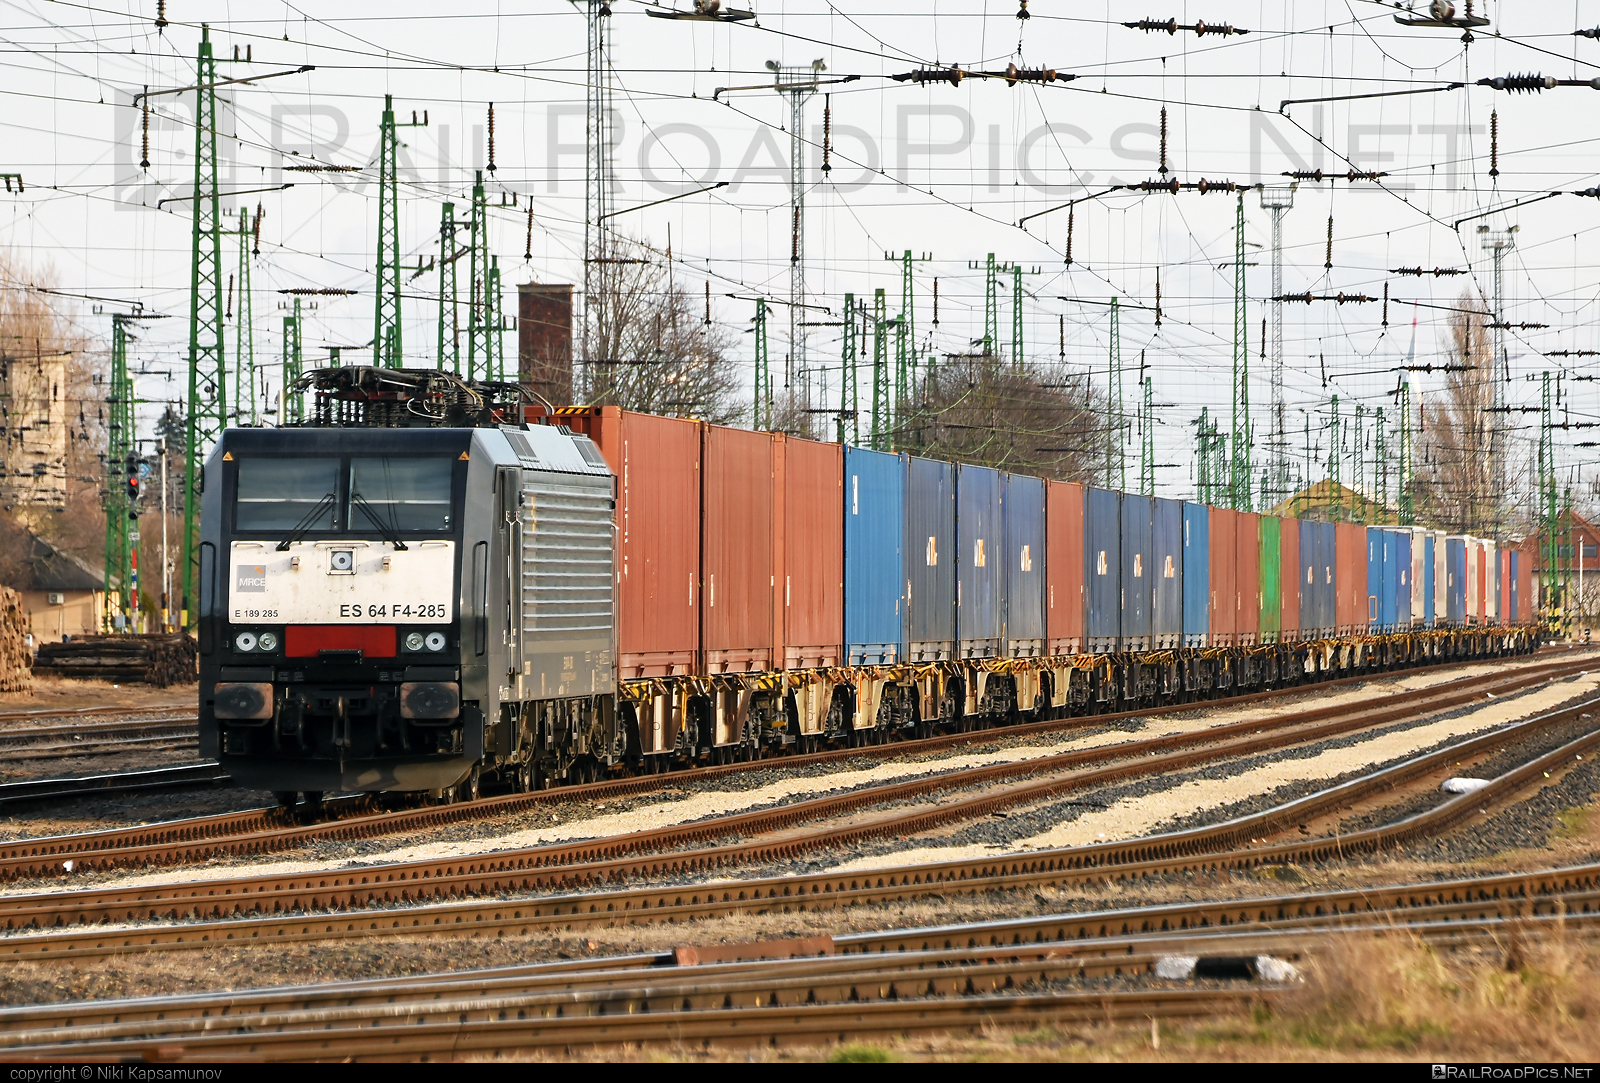 Siemens ES 64 F4 - 189 285 operated by DB Cargo AG #container #db #dbcargo #dbcargoag #dispolok #es64 #es64f4 #eurosprinter #flatwagon #mitsuirailcapitaleurope #mitsuirailcapitaleuropegmbh #mrce #siemens #siemensEs64 #siemensEs64f4